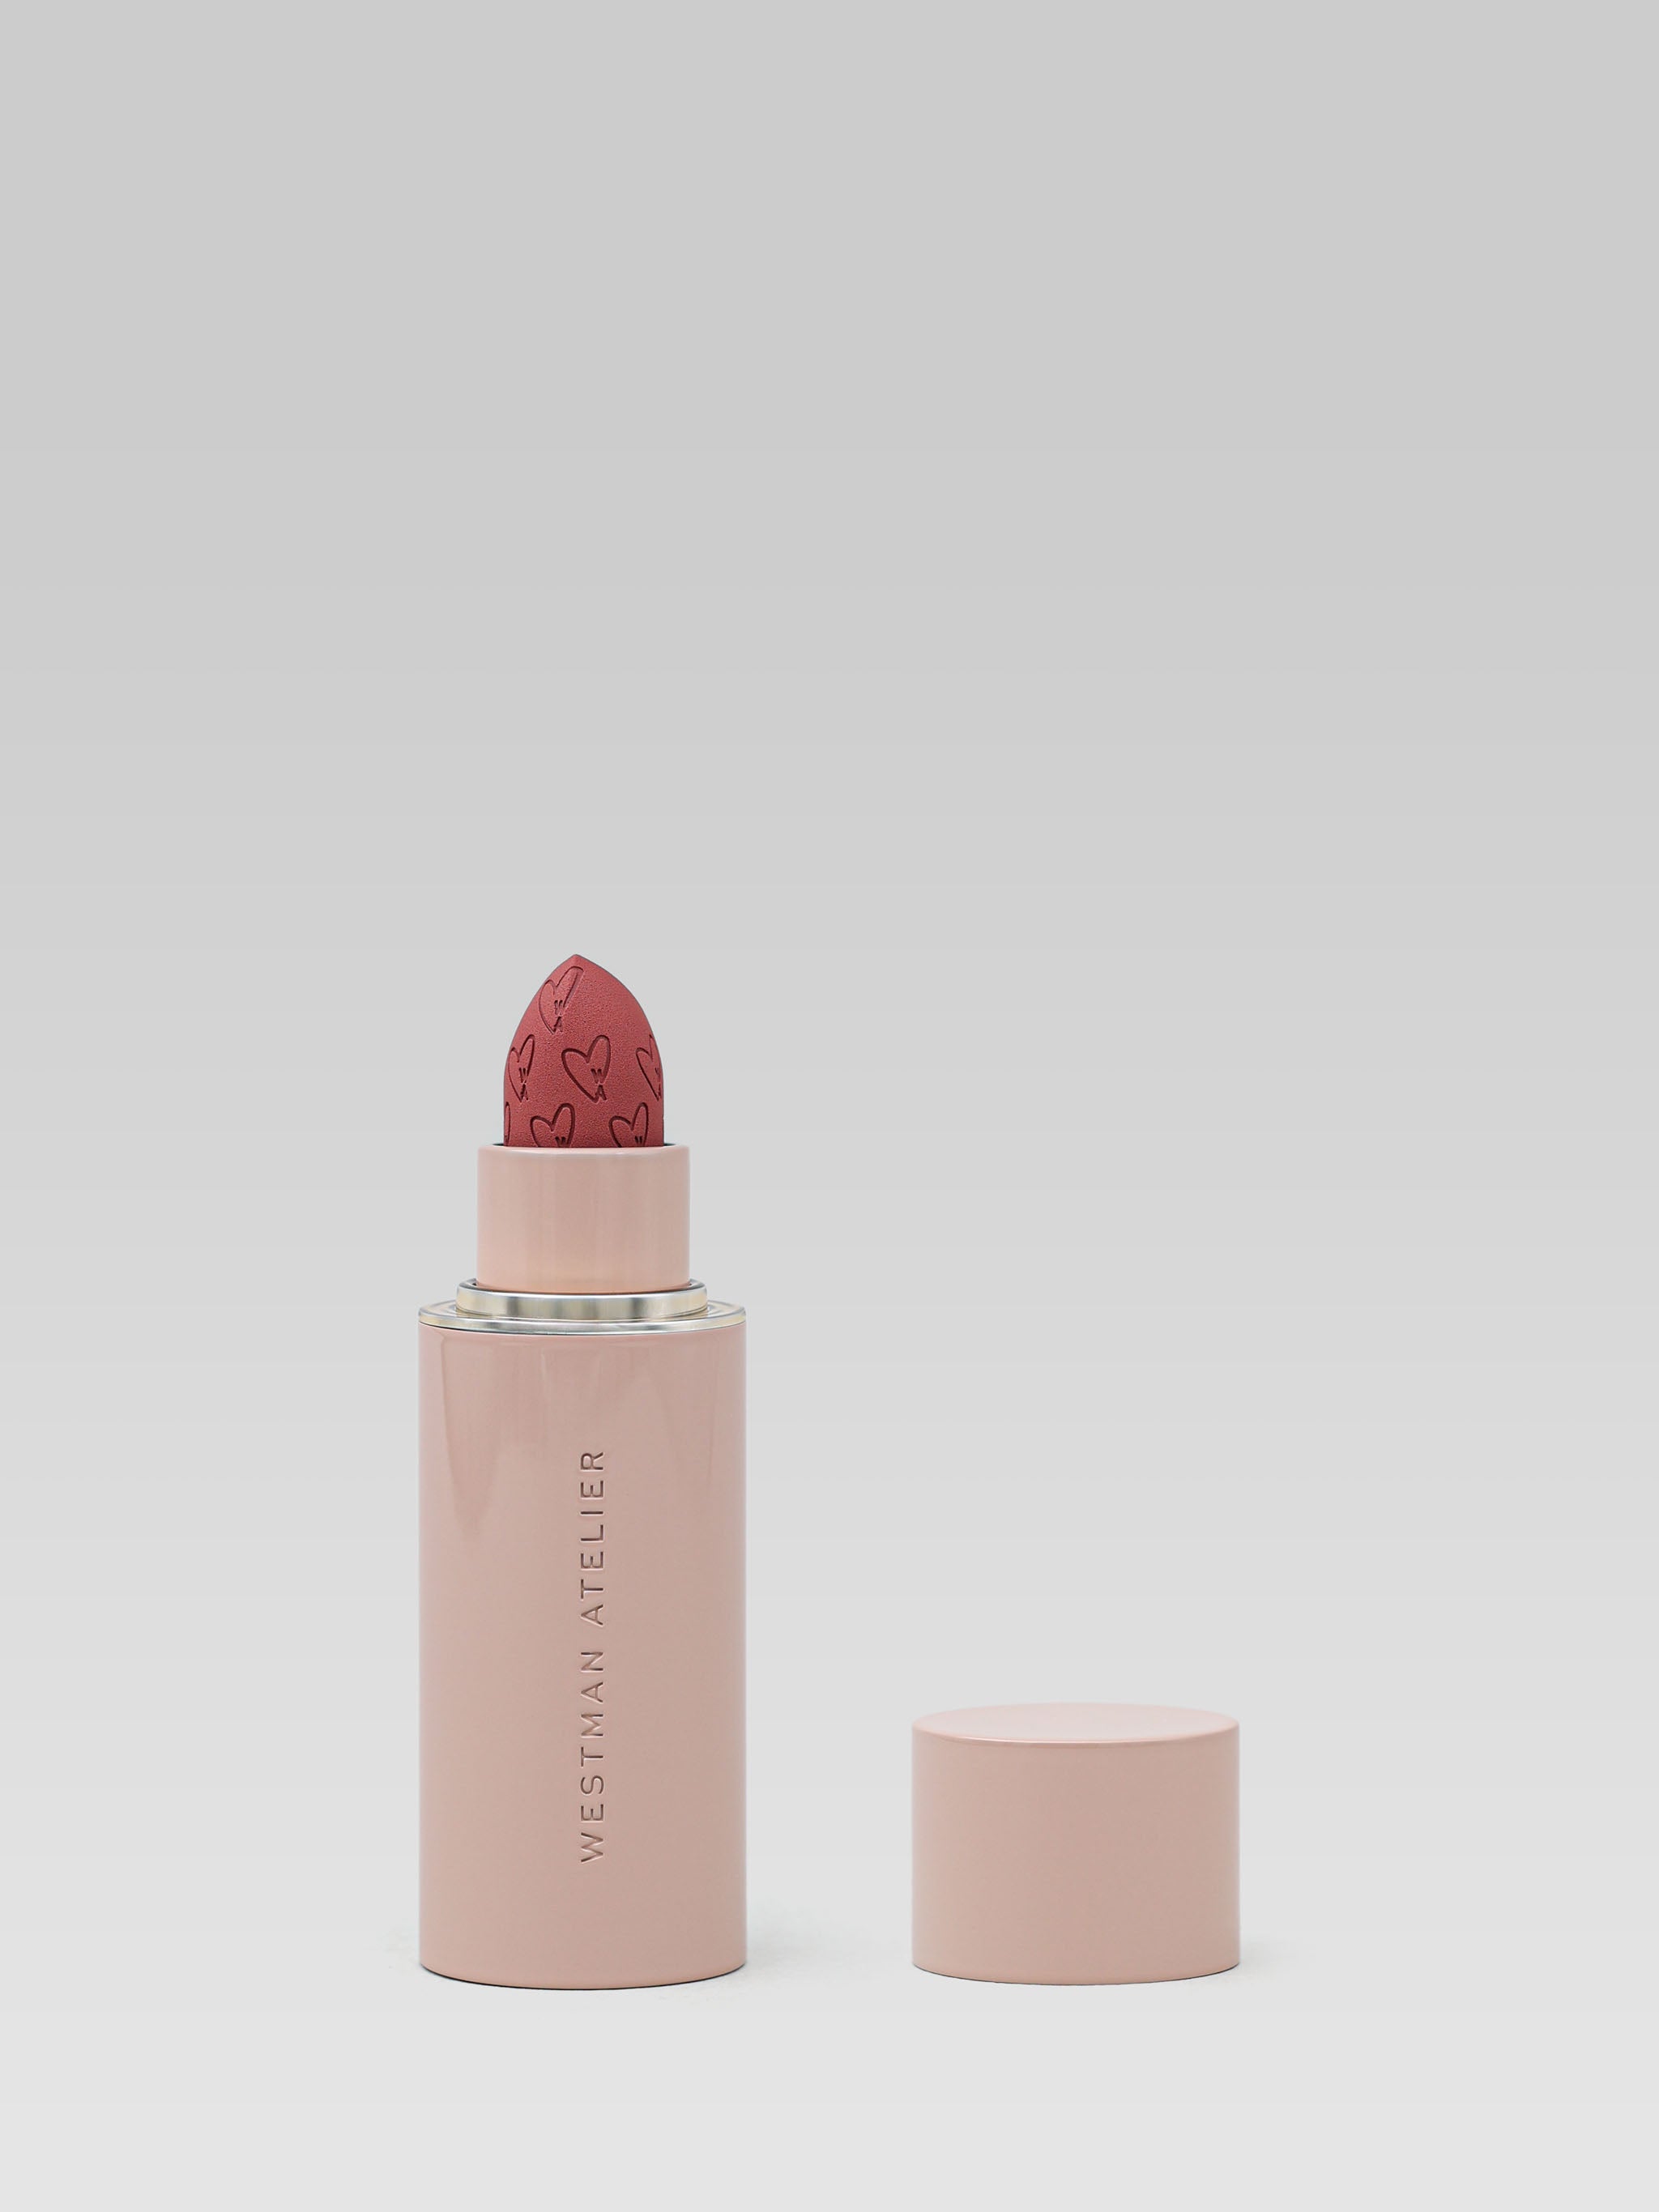 Westman Atelier Lip Suede Matte Lipstick in Je Rêve product shot